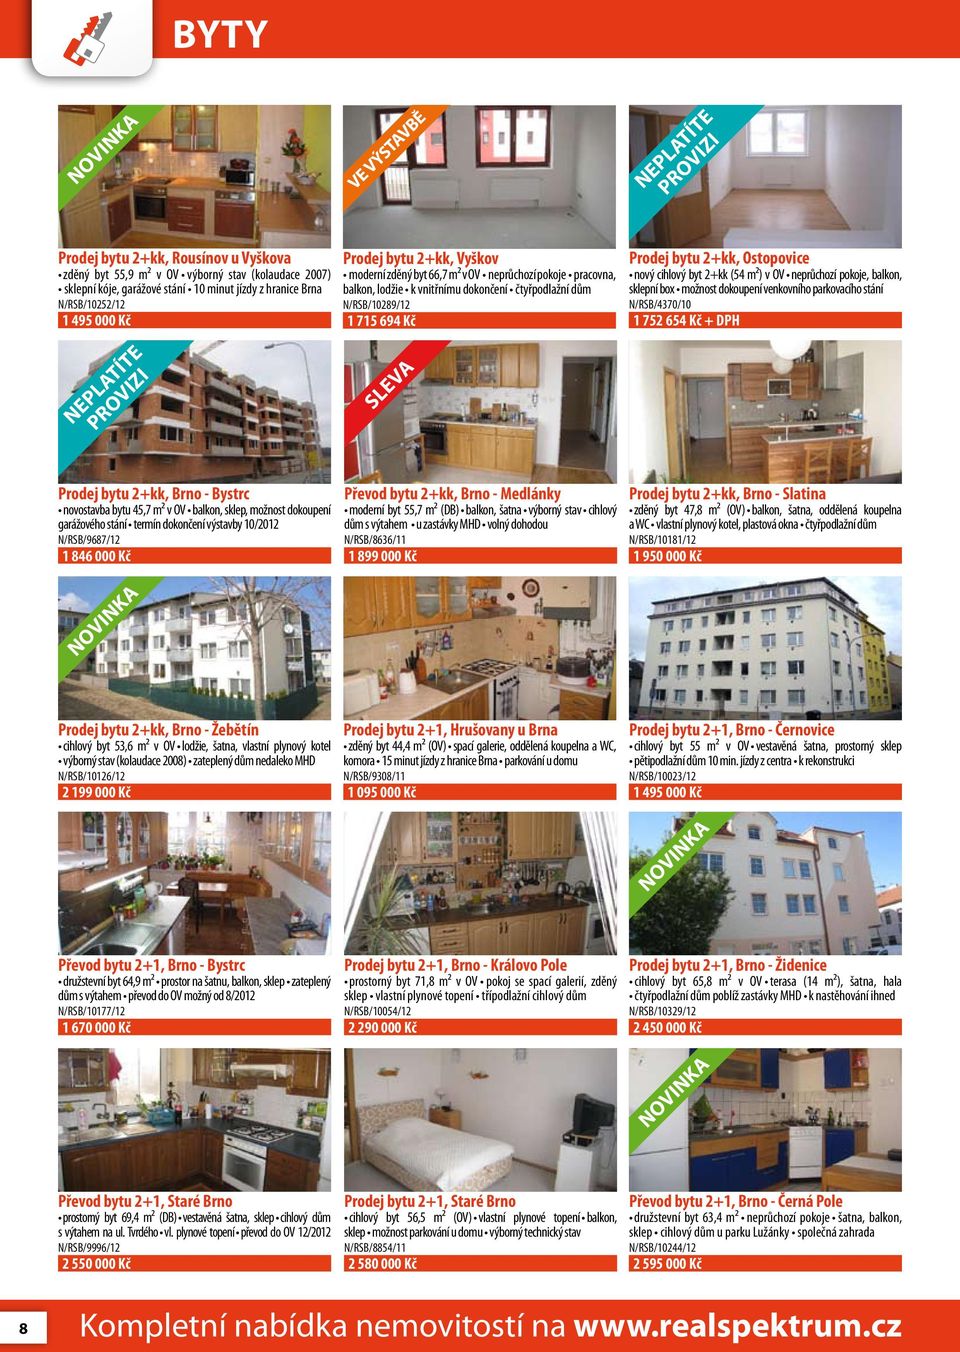 cihlový byt 2+kk (54 m²) v OV neprůchozí pokoje, balkon, sklepní box možnost dokoupení venkovního parkovacího stání N/RSB/4370/10 1 752 654 Kč + DPH sleva Prodej bytu 2+kk, Brno - Bystrc novostavba